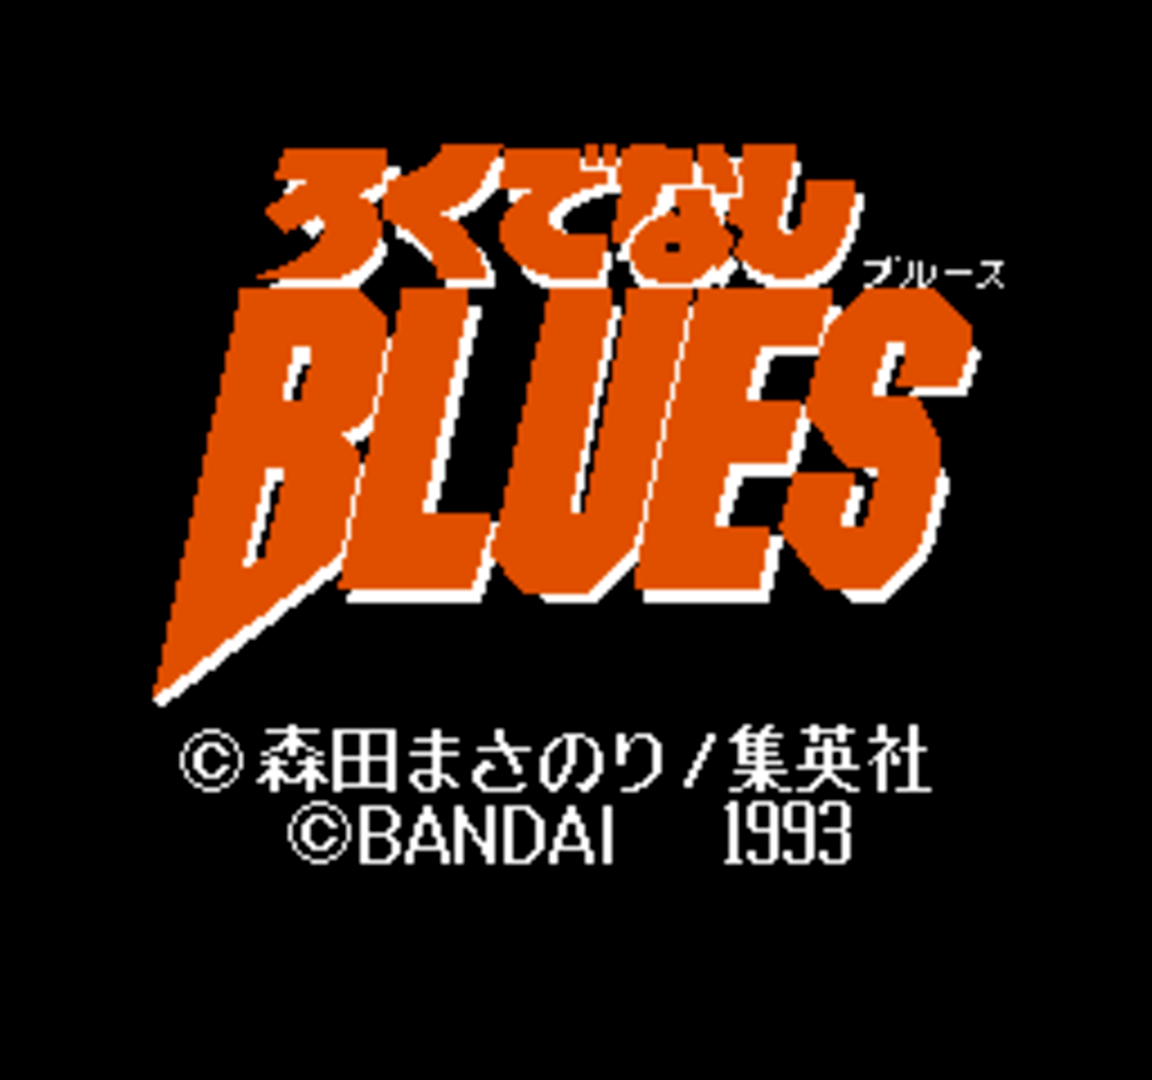 Rokudenashi Blues (Good-For-Nothing Blues)